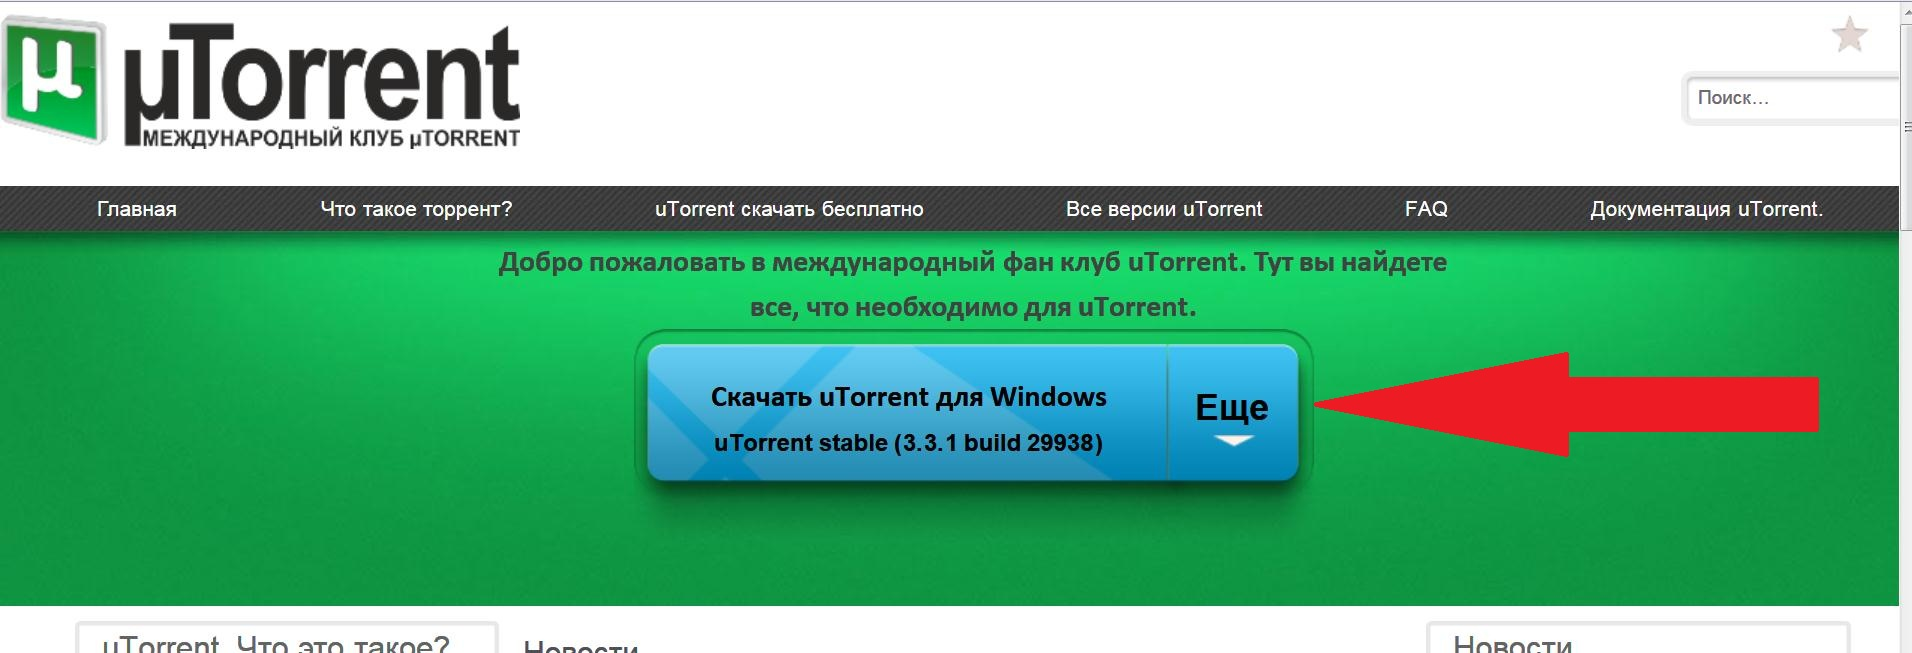 Скачать торрент не запускается установка тор браузер даркнет2web